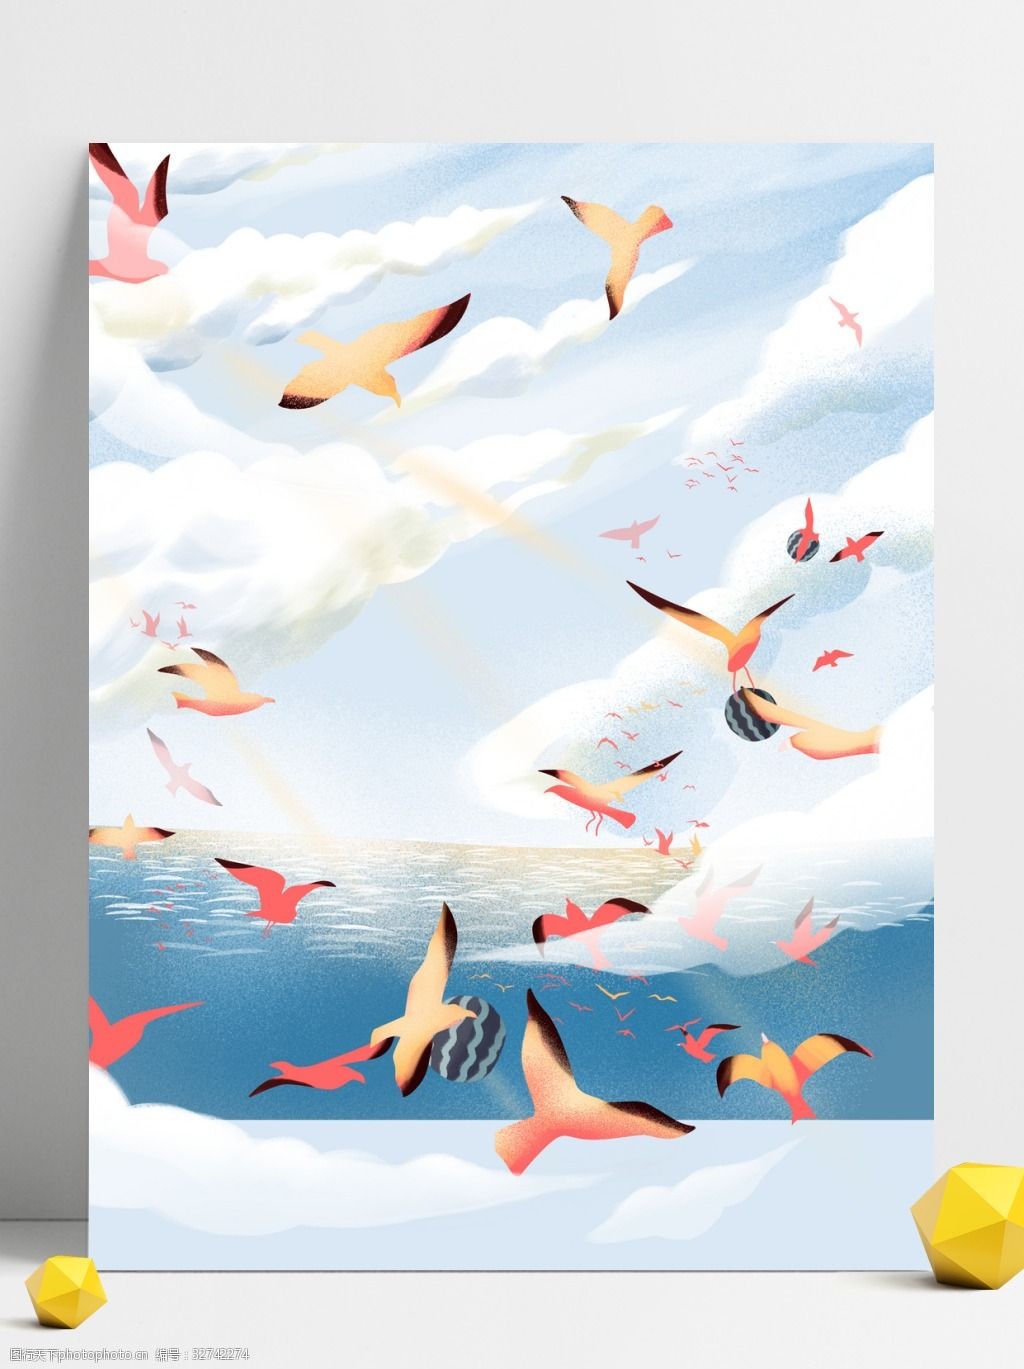 彩绘夏季海鸥大海背景设计